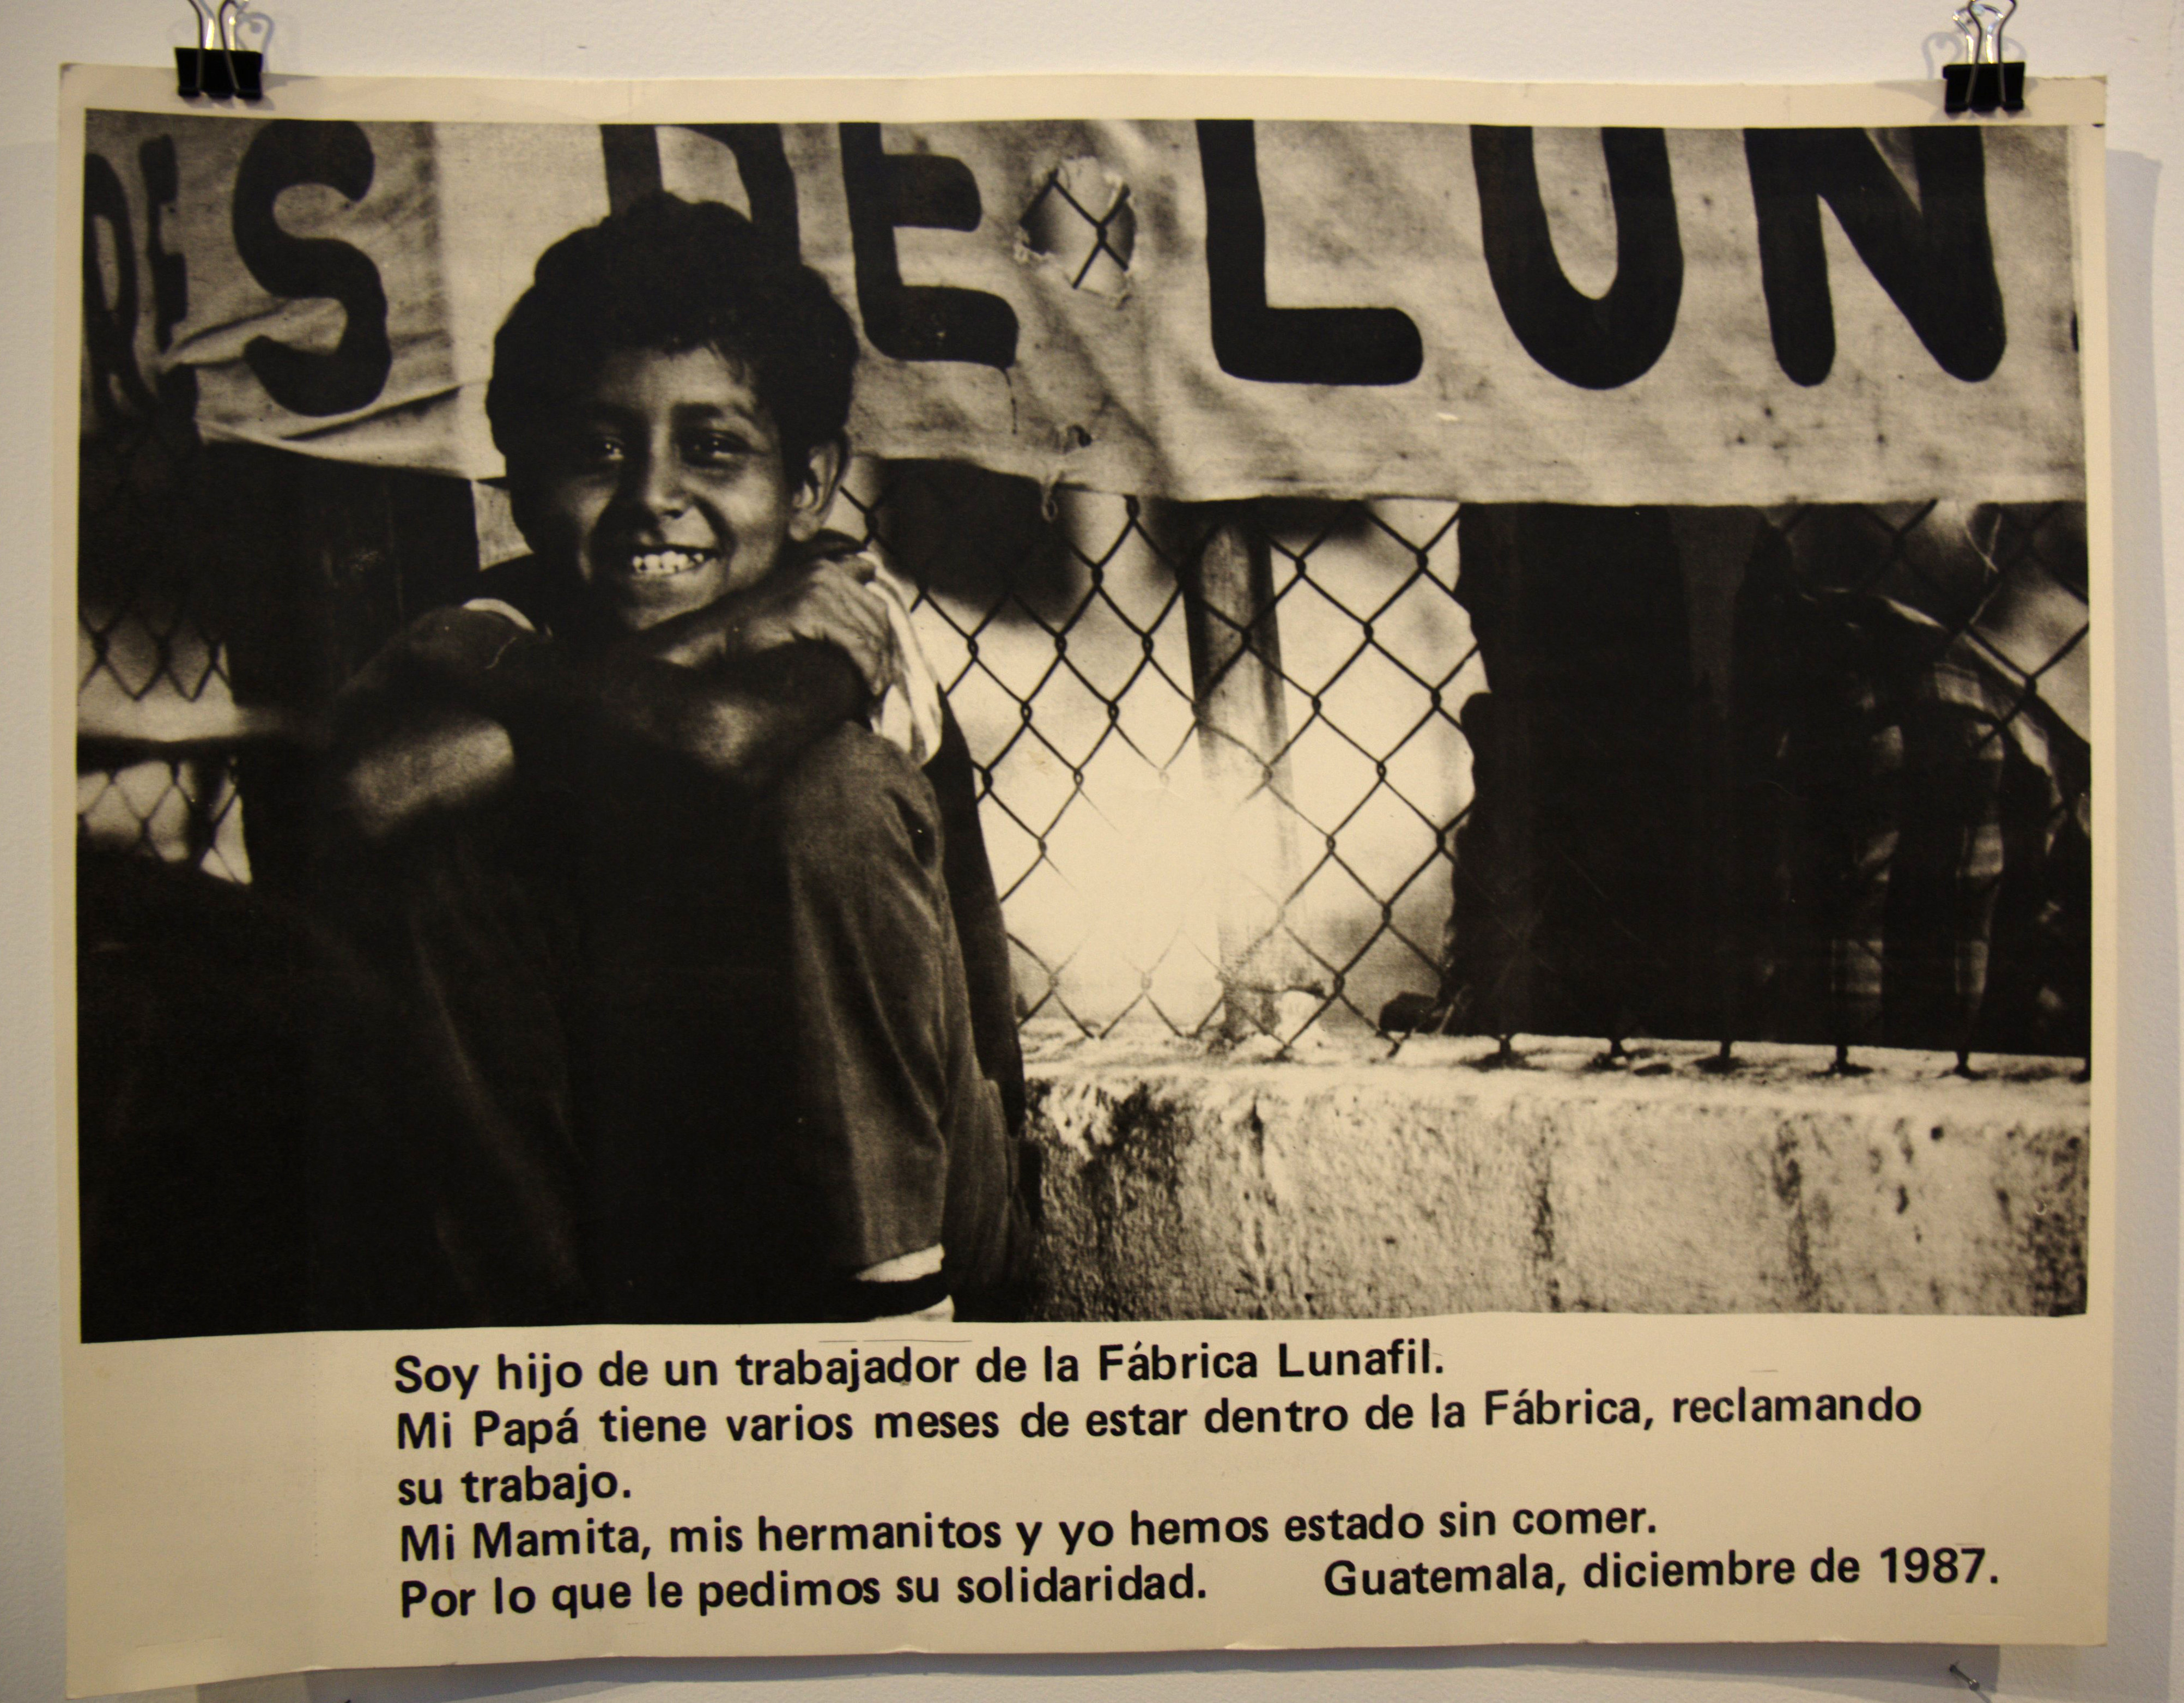 “It was a home grown kind of insurgency:” Nancy Peckenham on Guatemala